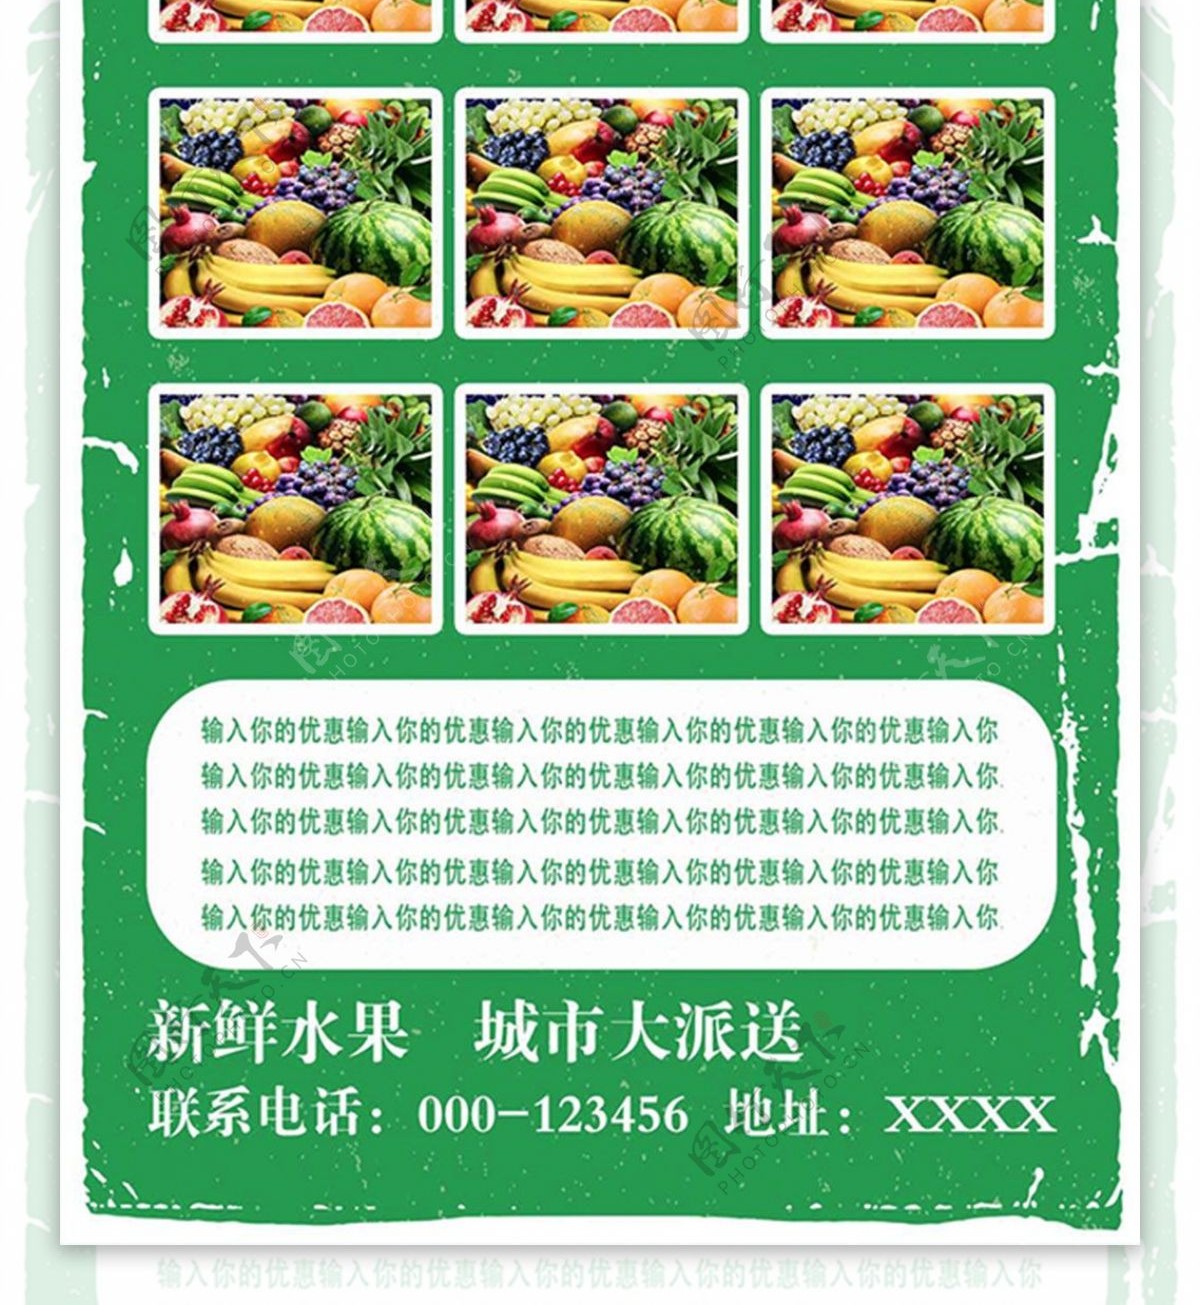 绿色简约清新水果超市促销宣传单